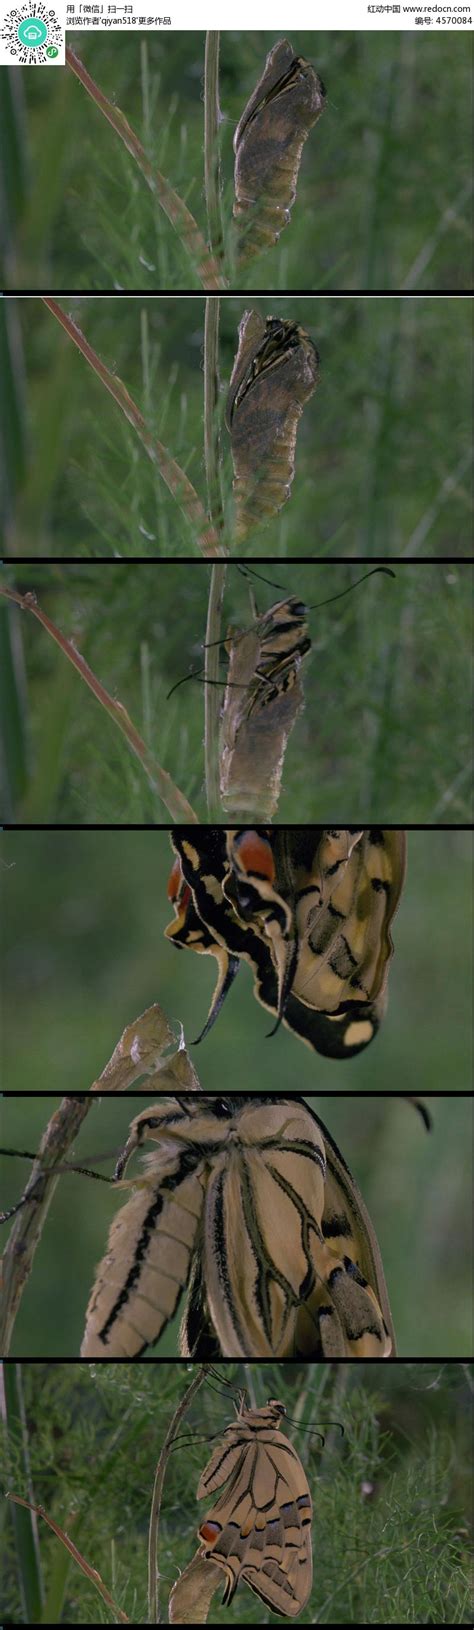 蝴蝶脱变的过程：破茧→化茧→成蛹 →破茧→成蝶